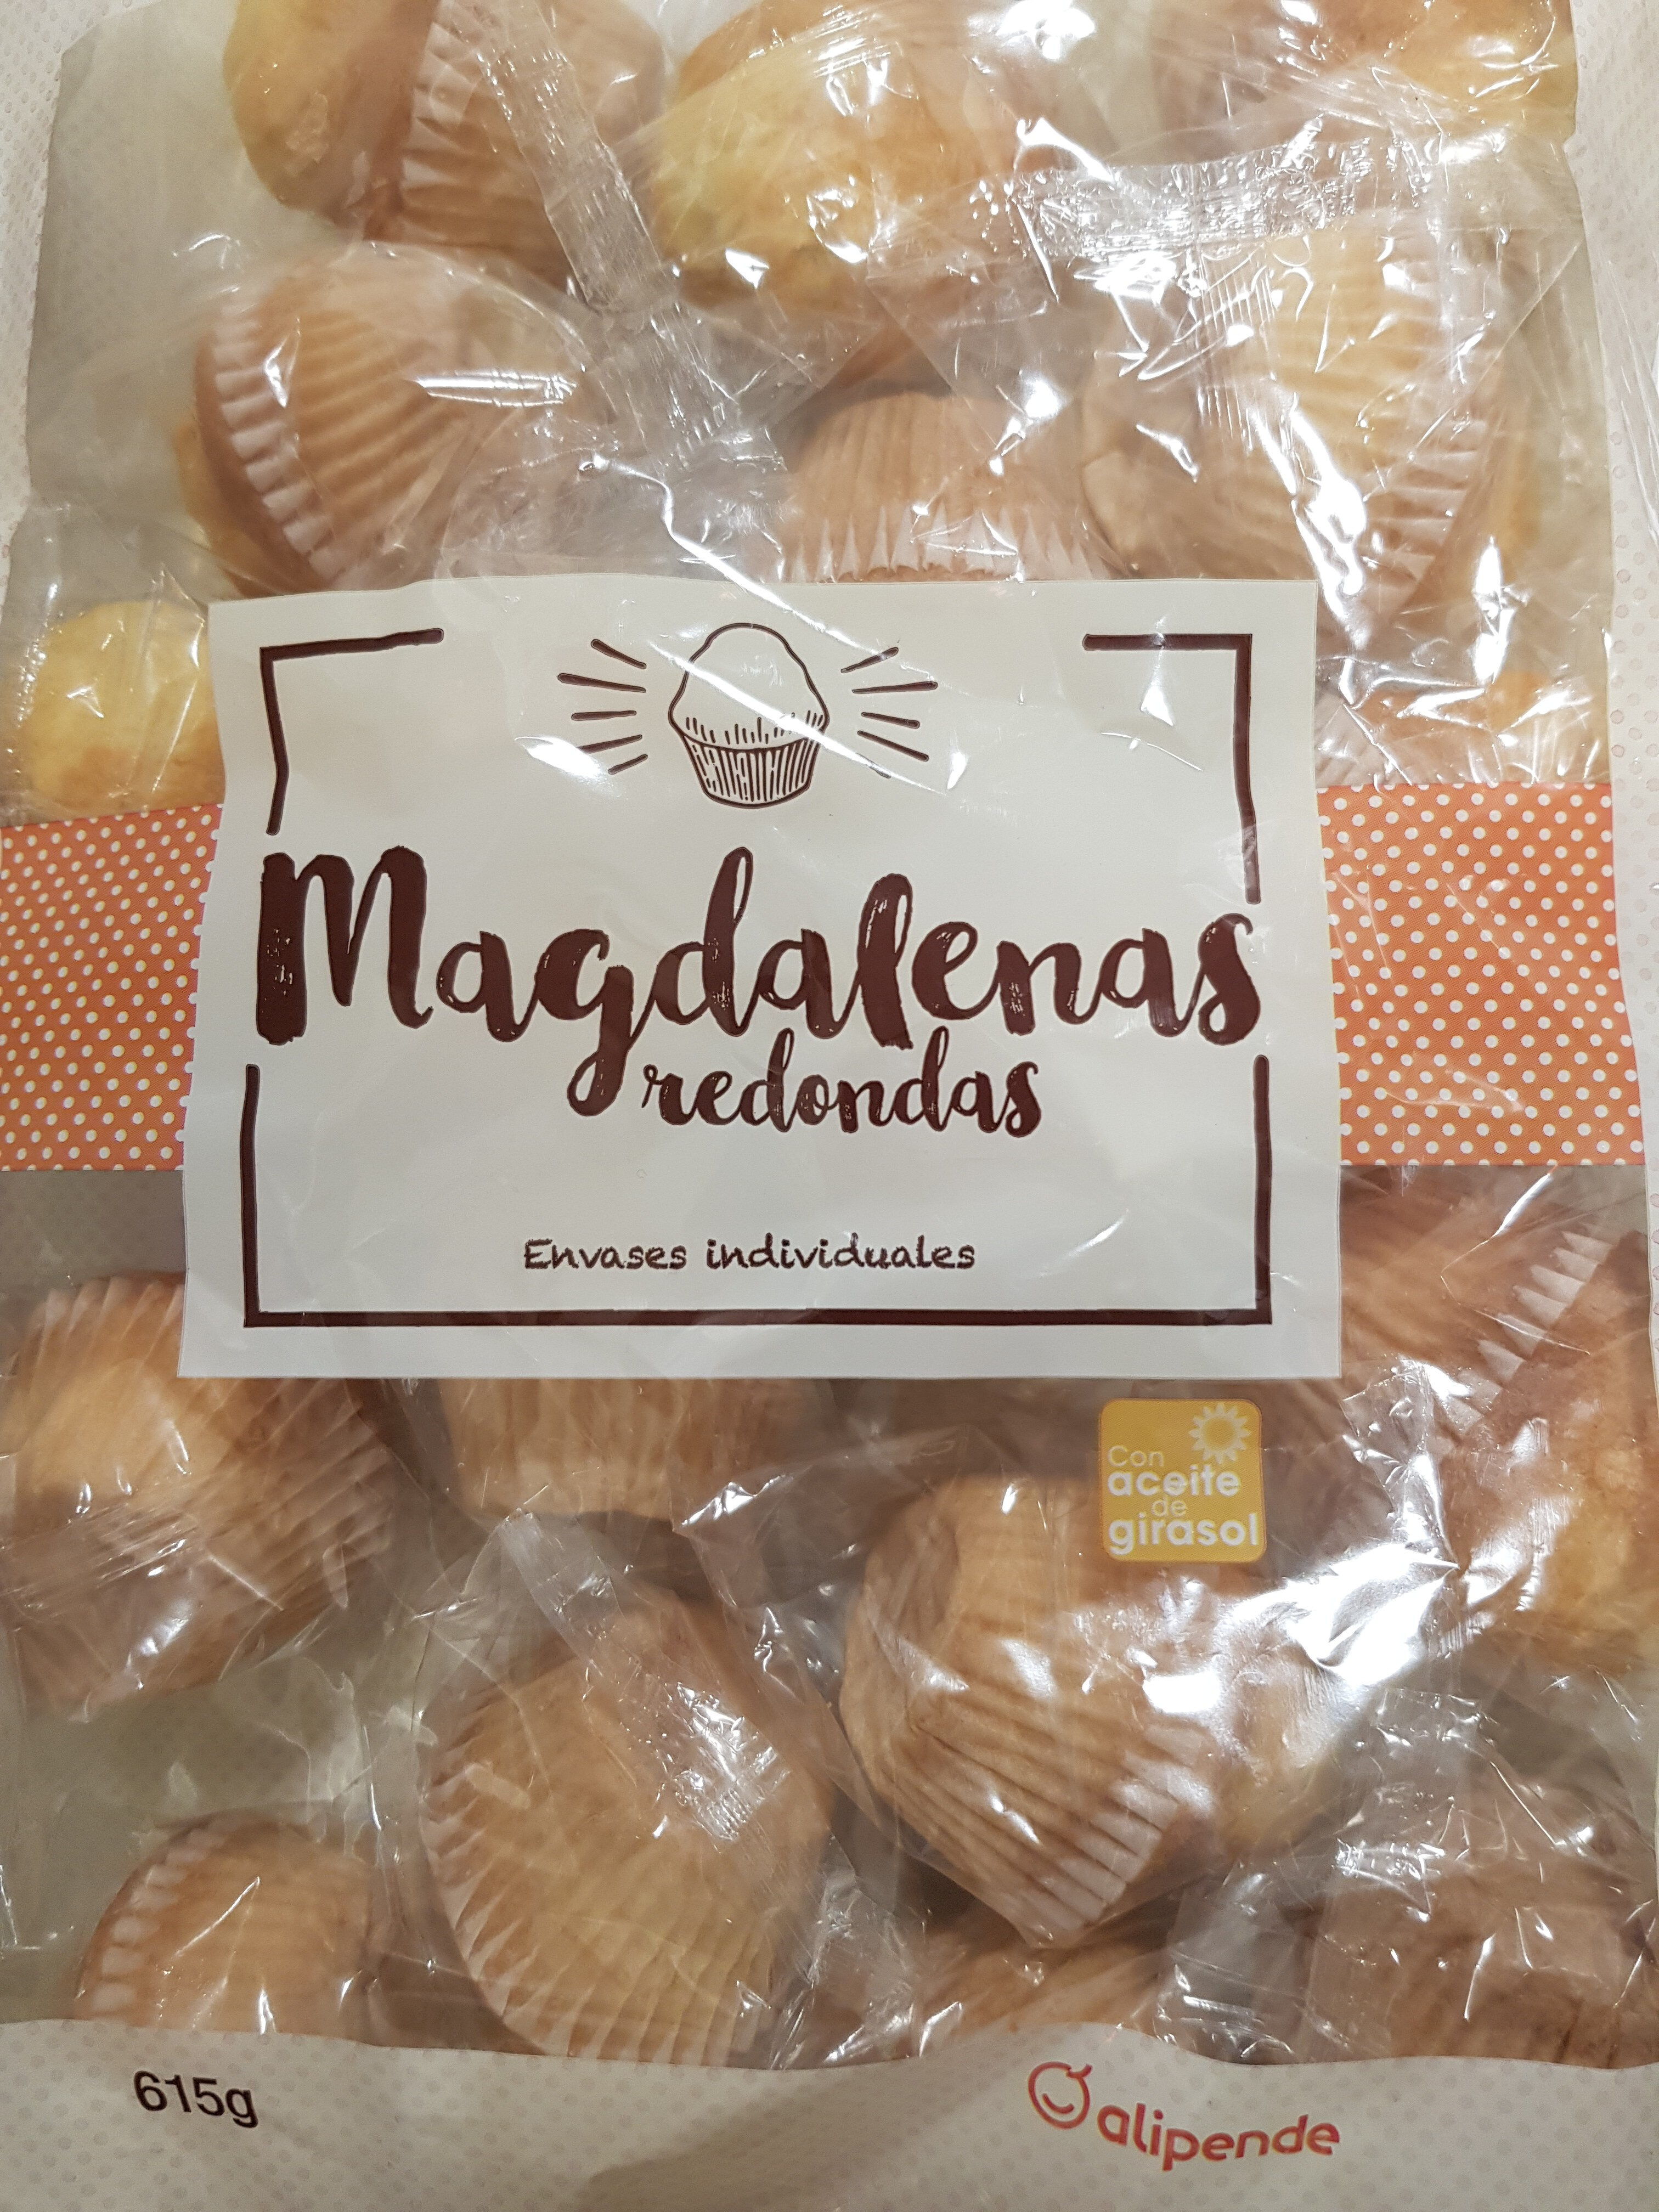 Magdalenas redondas - Product - es